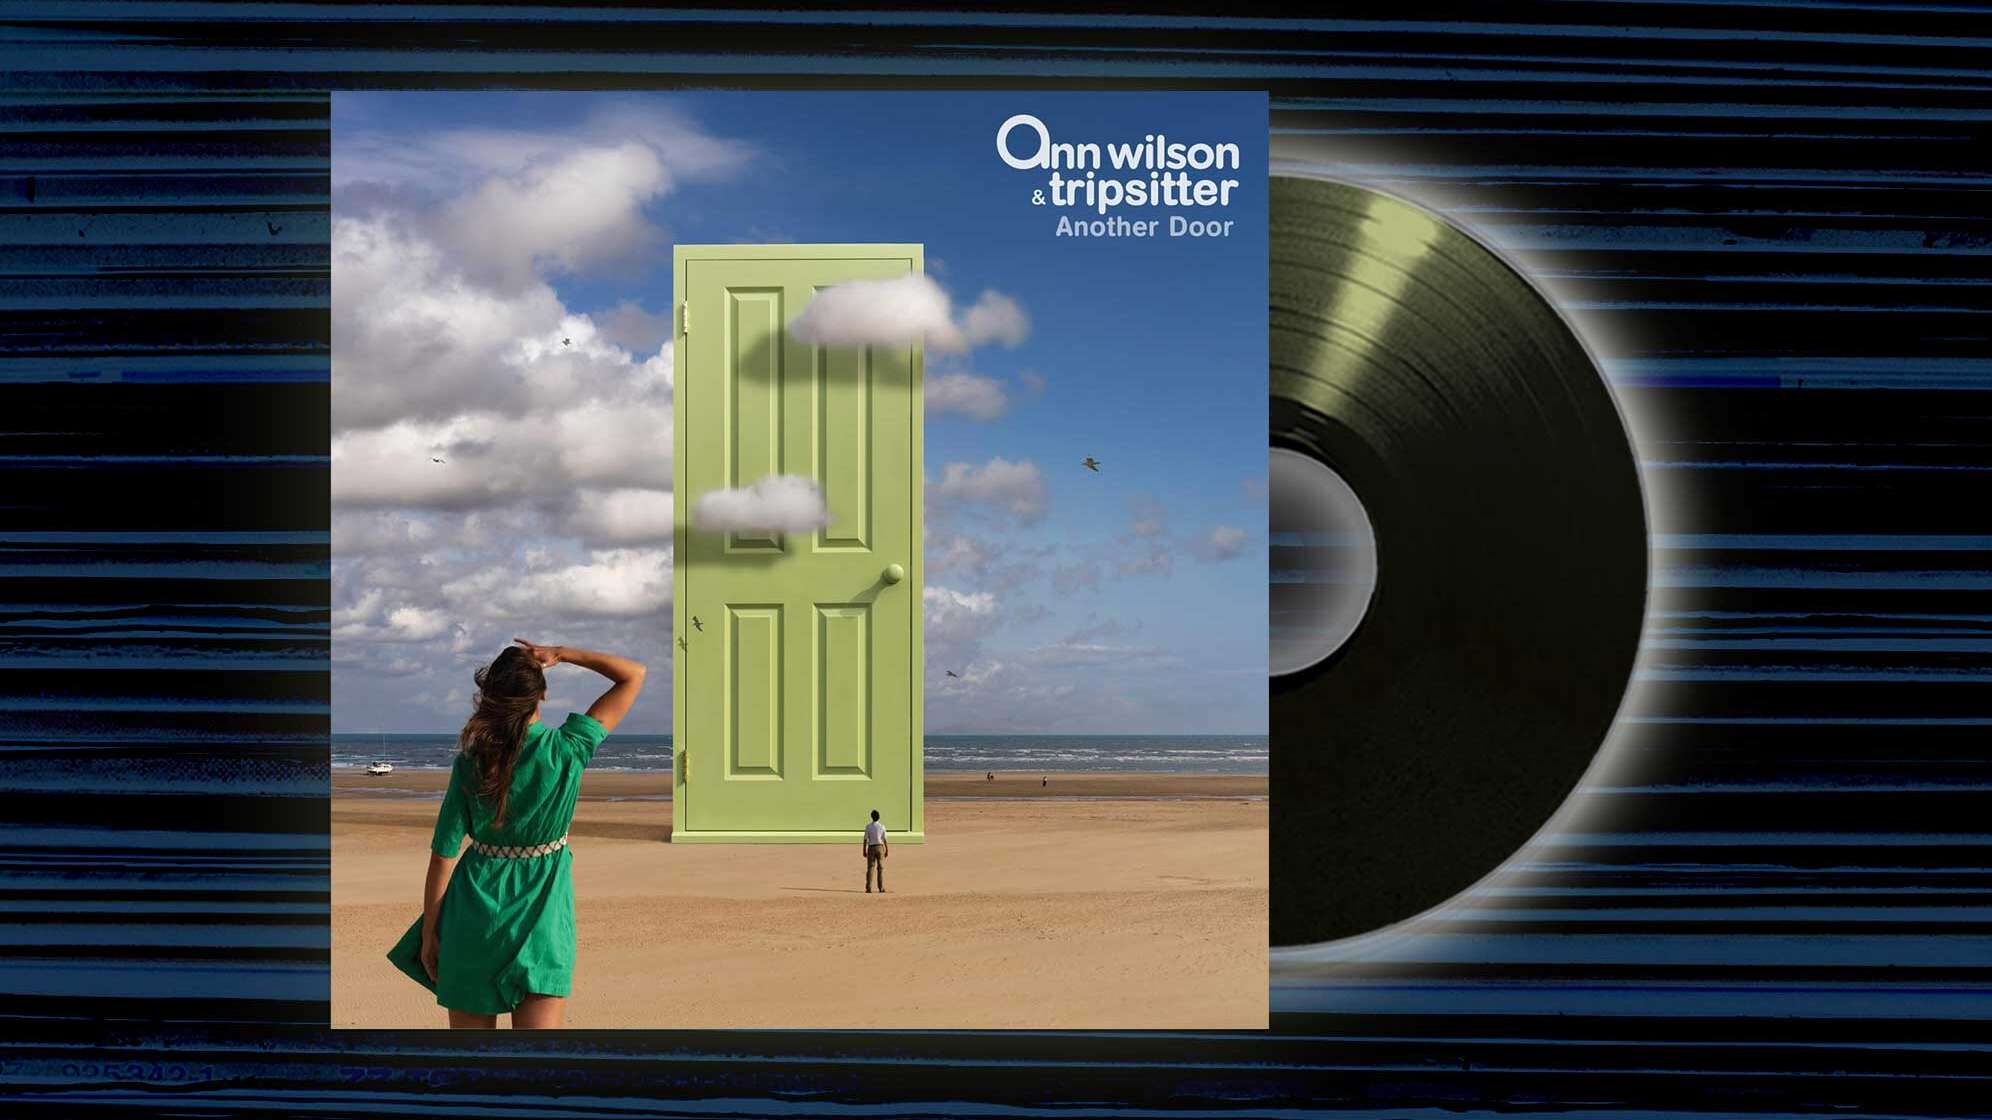 Das Cover von "Another Door" von Ann Wilson & Tripsitter mit einer Frau, die in der Wüste vor einer großen grünen Tür steht